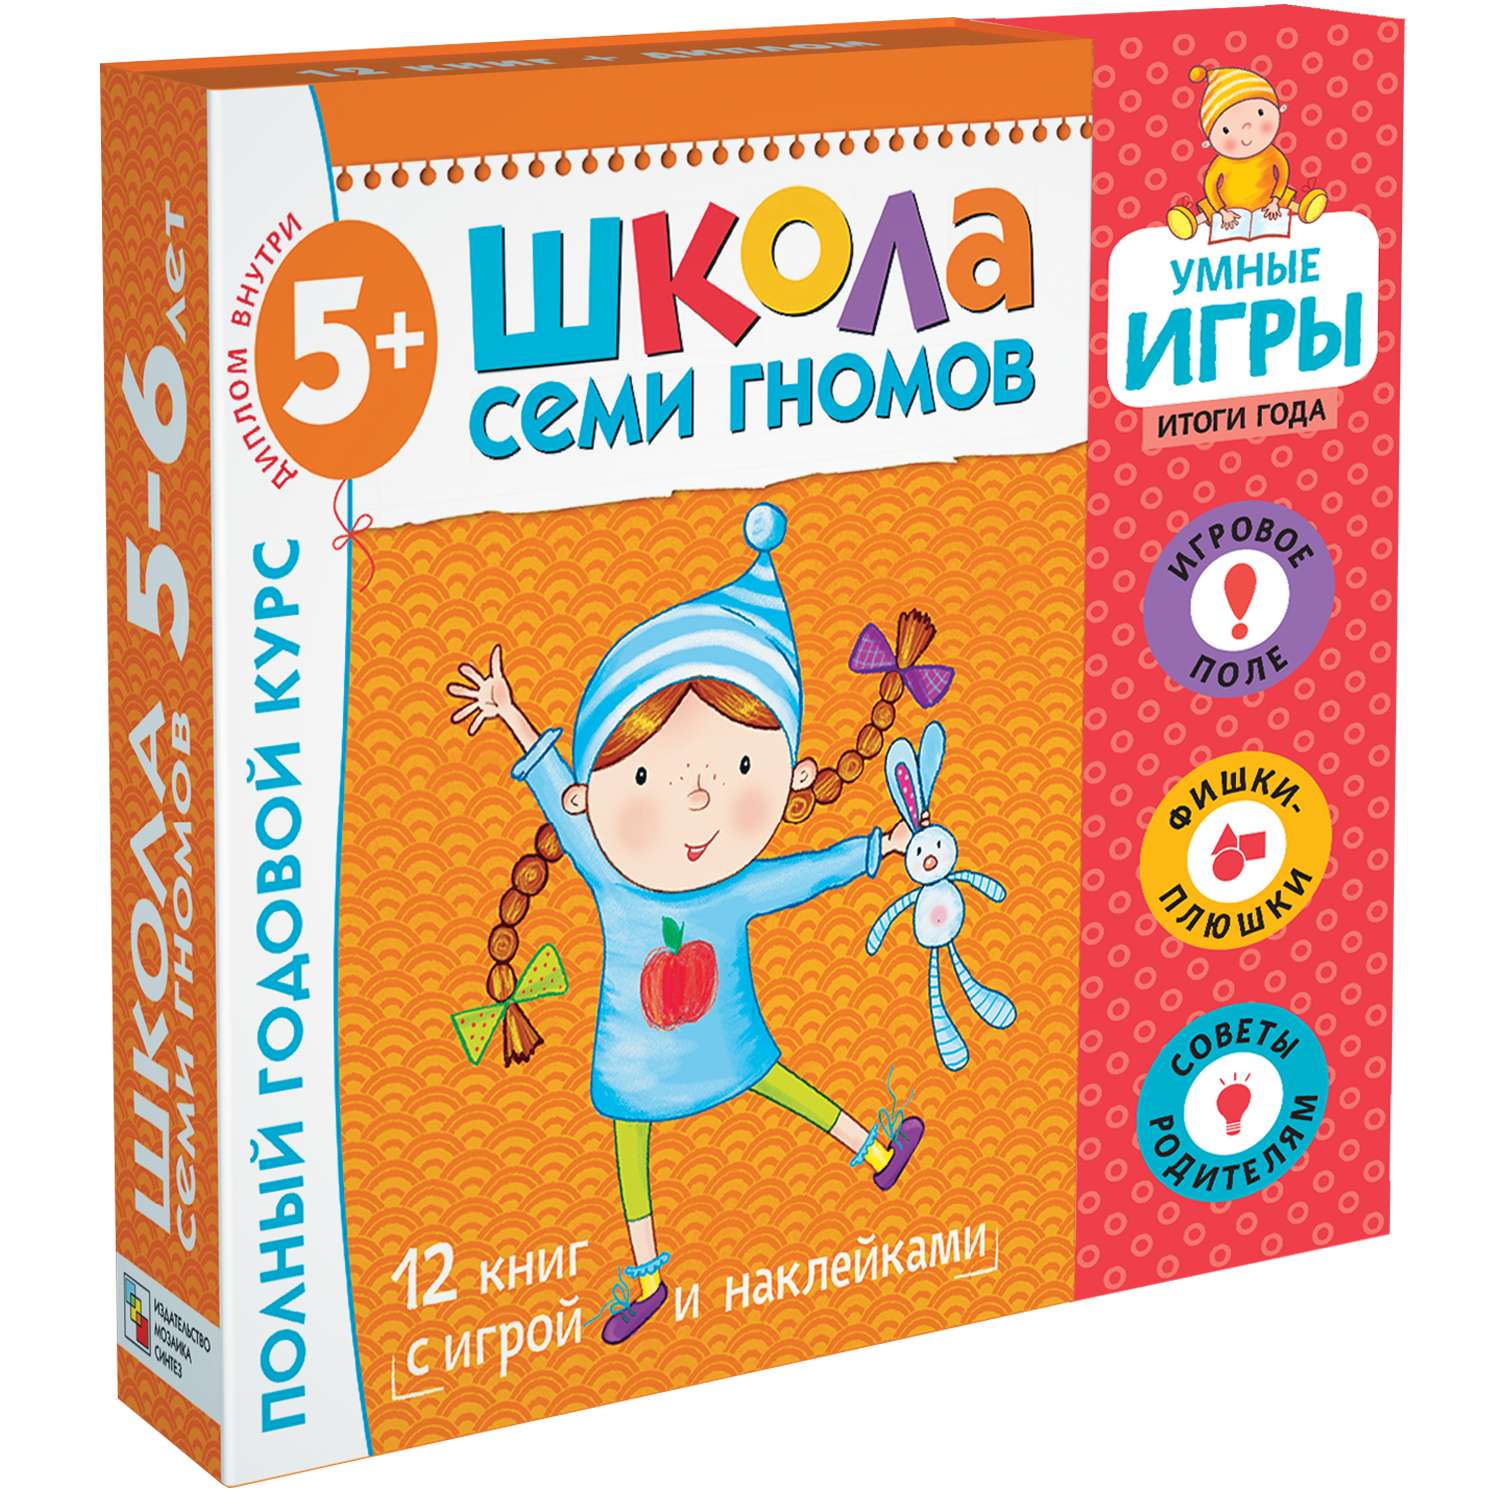 Набор книг МОЗАИКА kids Школа Семи Гномов Расширенный комплект 6год обучения с игрой - фото 1